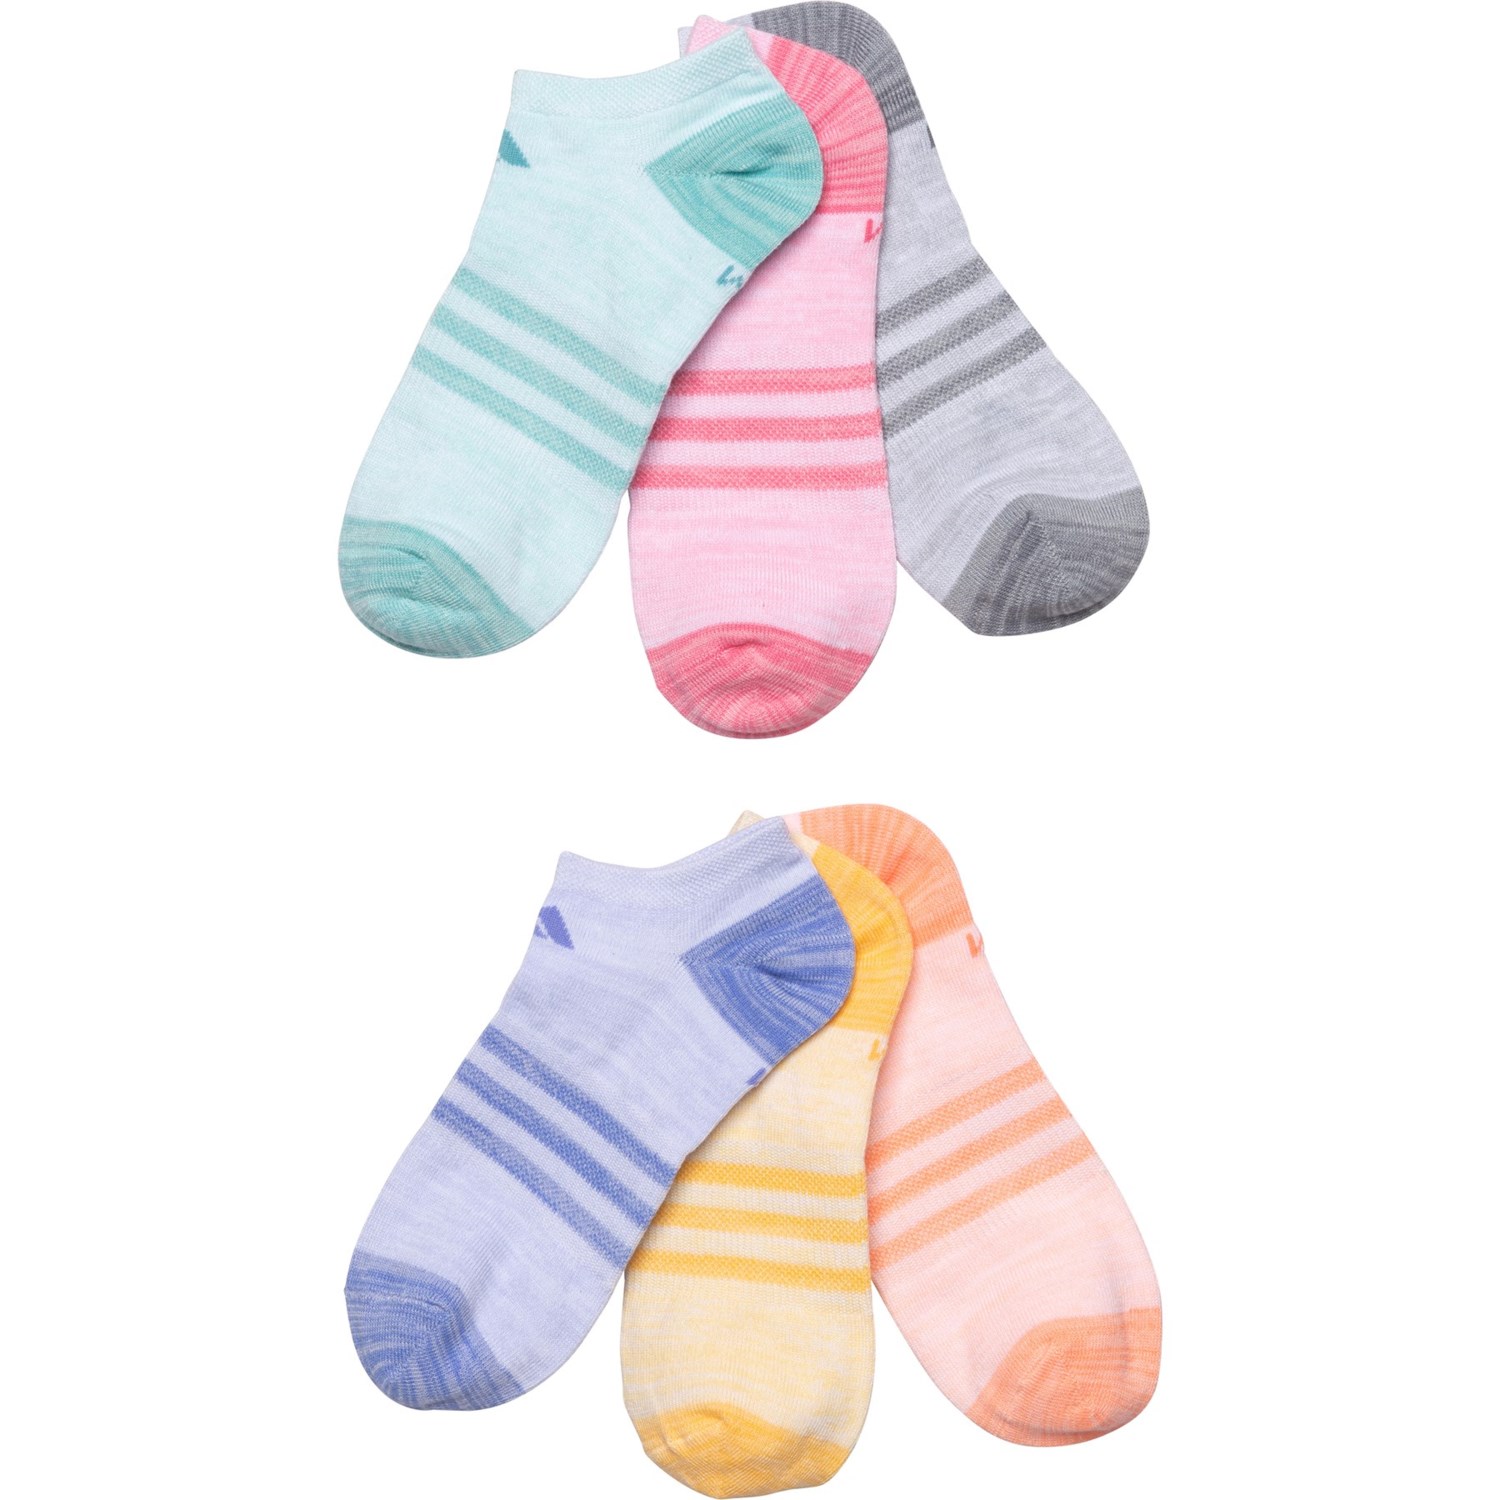 Adidas Superlite Linear Logo Socks - 6-Pack, Ankle (For Girls)